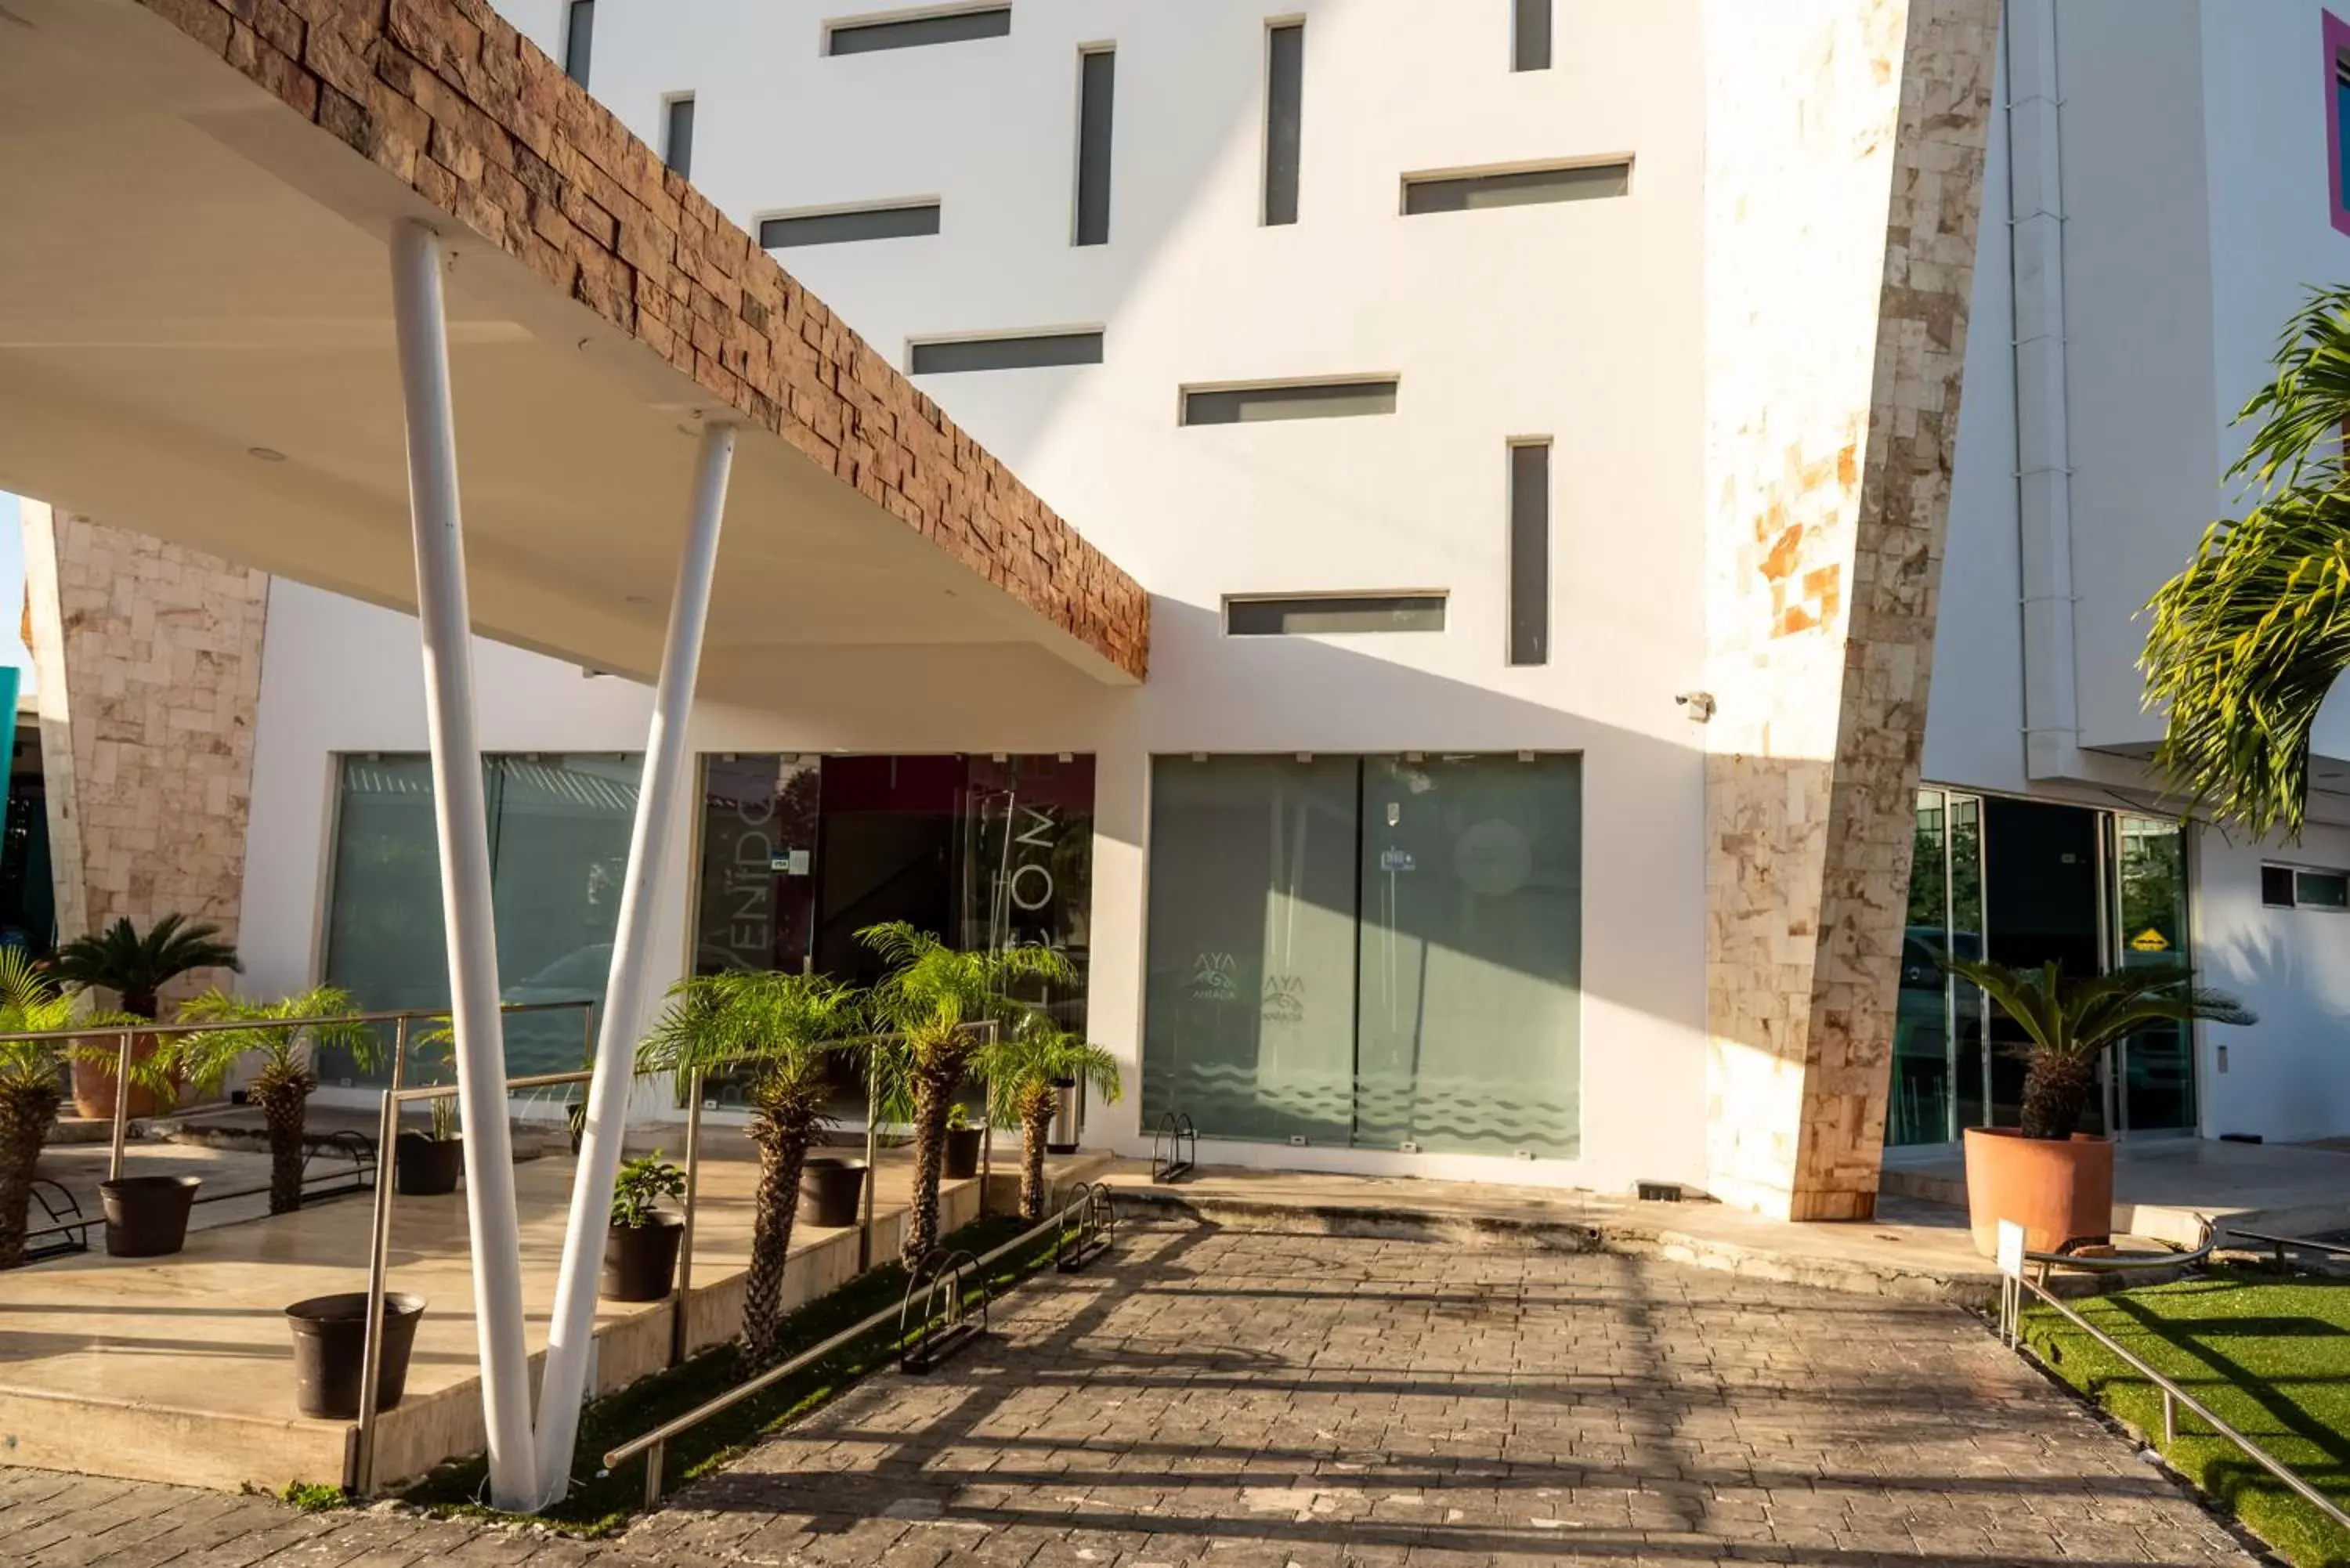 Facade/entrance in Hotel Playa Encantada